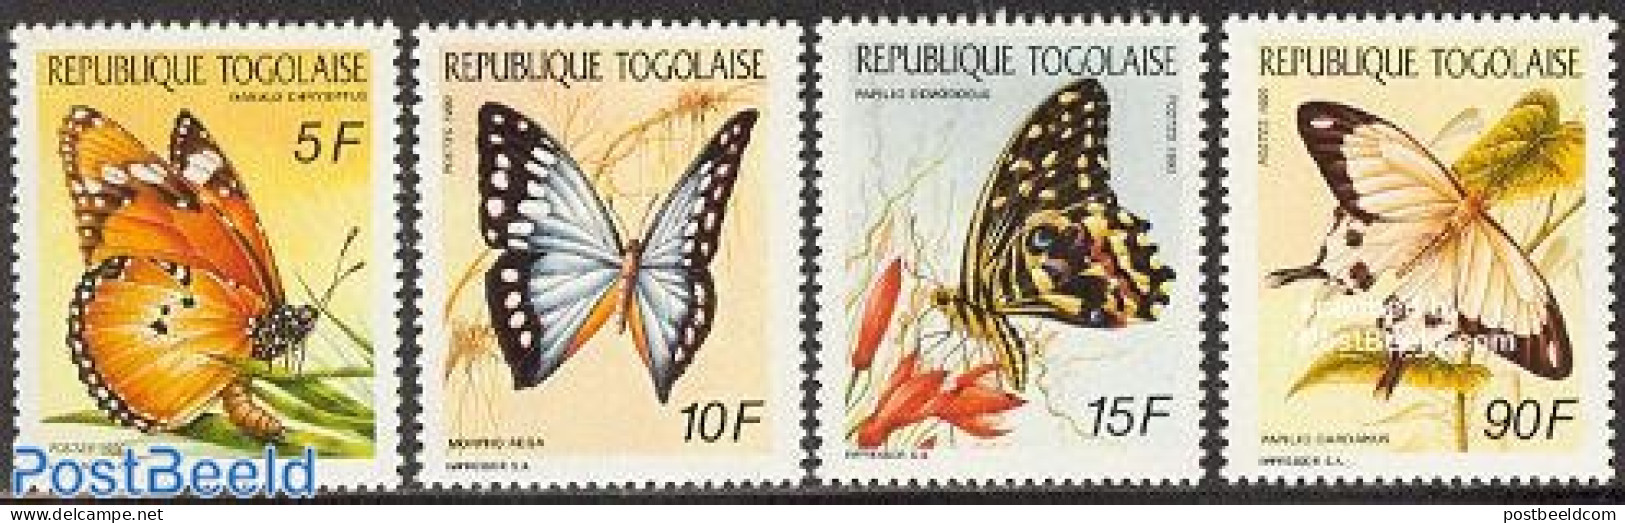 Togo 1990 Butterflies 4v, Mint NH, Nature - Butterflies - Togo (1960-...)